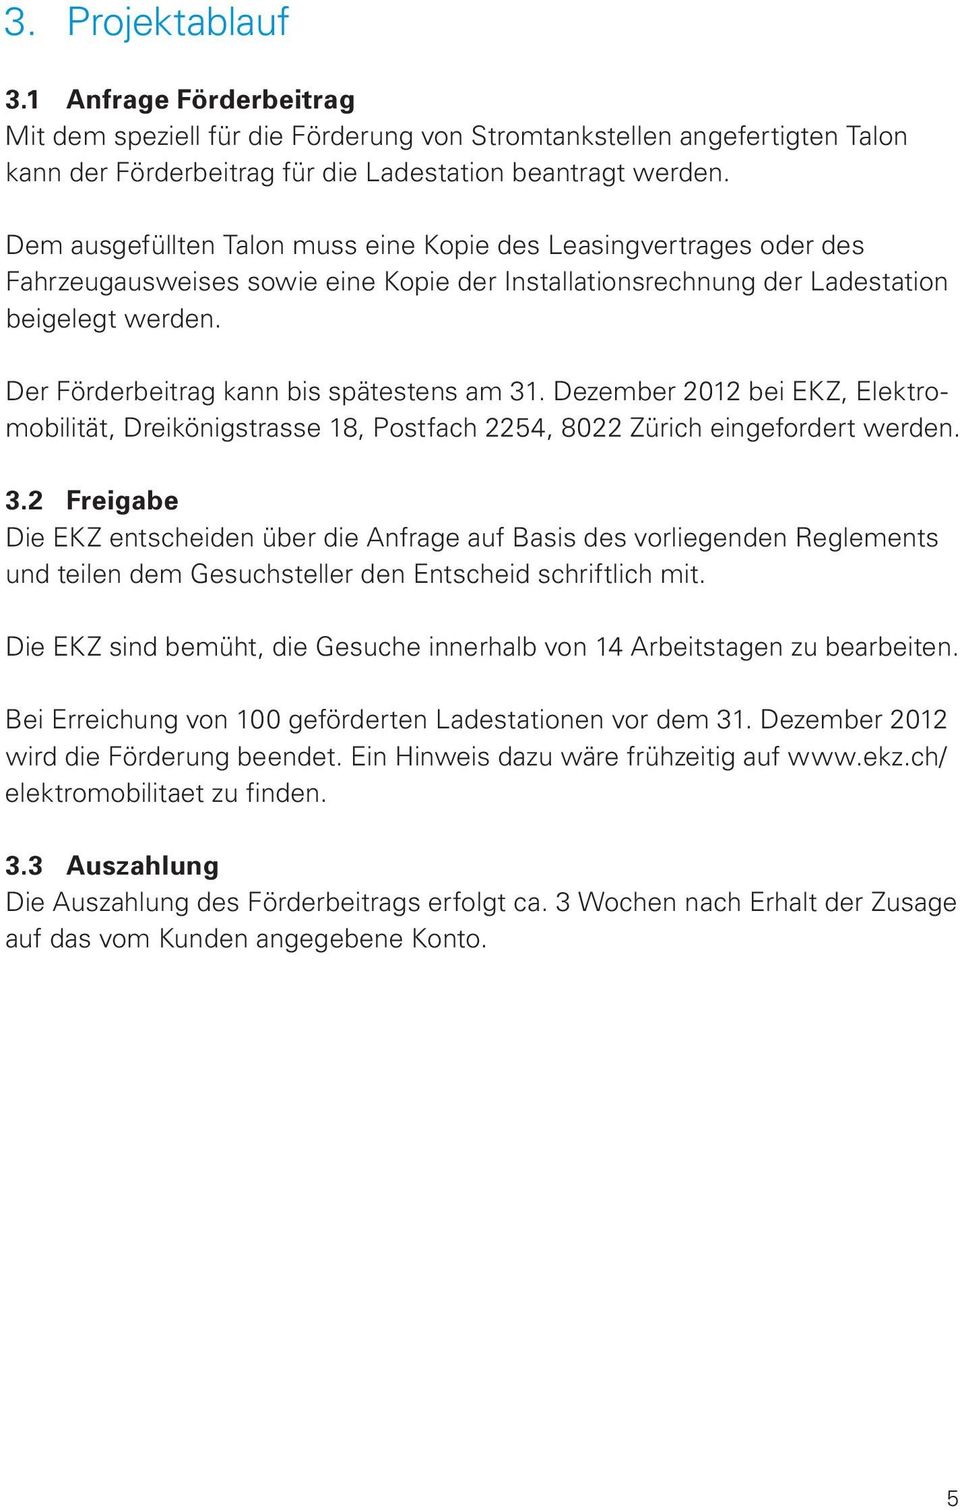 Der Förderbeitrag kann bis spätestens am 31. Dezember 2012 bei EKZ, Elektromobilität, Dreikönigstrasse 18, Postfach 2254, 8022 Zürich eingefordert werden. 3.2 Freigabe Die EKZ entscheiden über die Anfrage auf Basis des vorliegenden Reglements und teilen dem Gesuchsteller den Entscheid schriftlich mit.